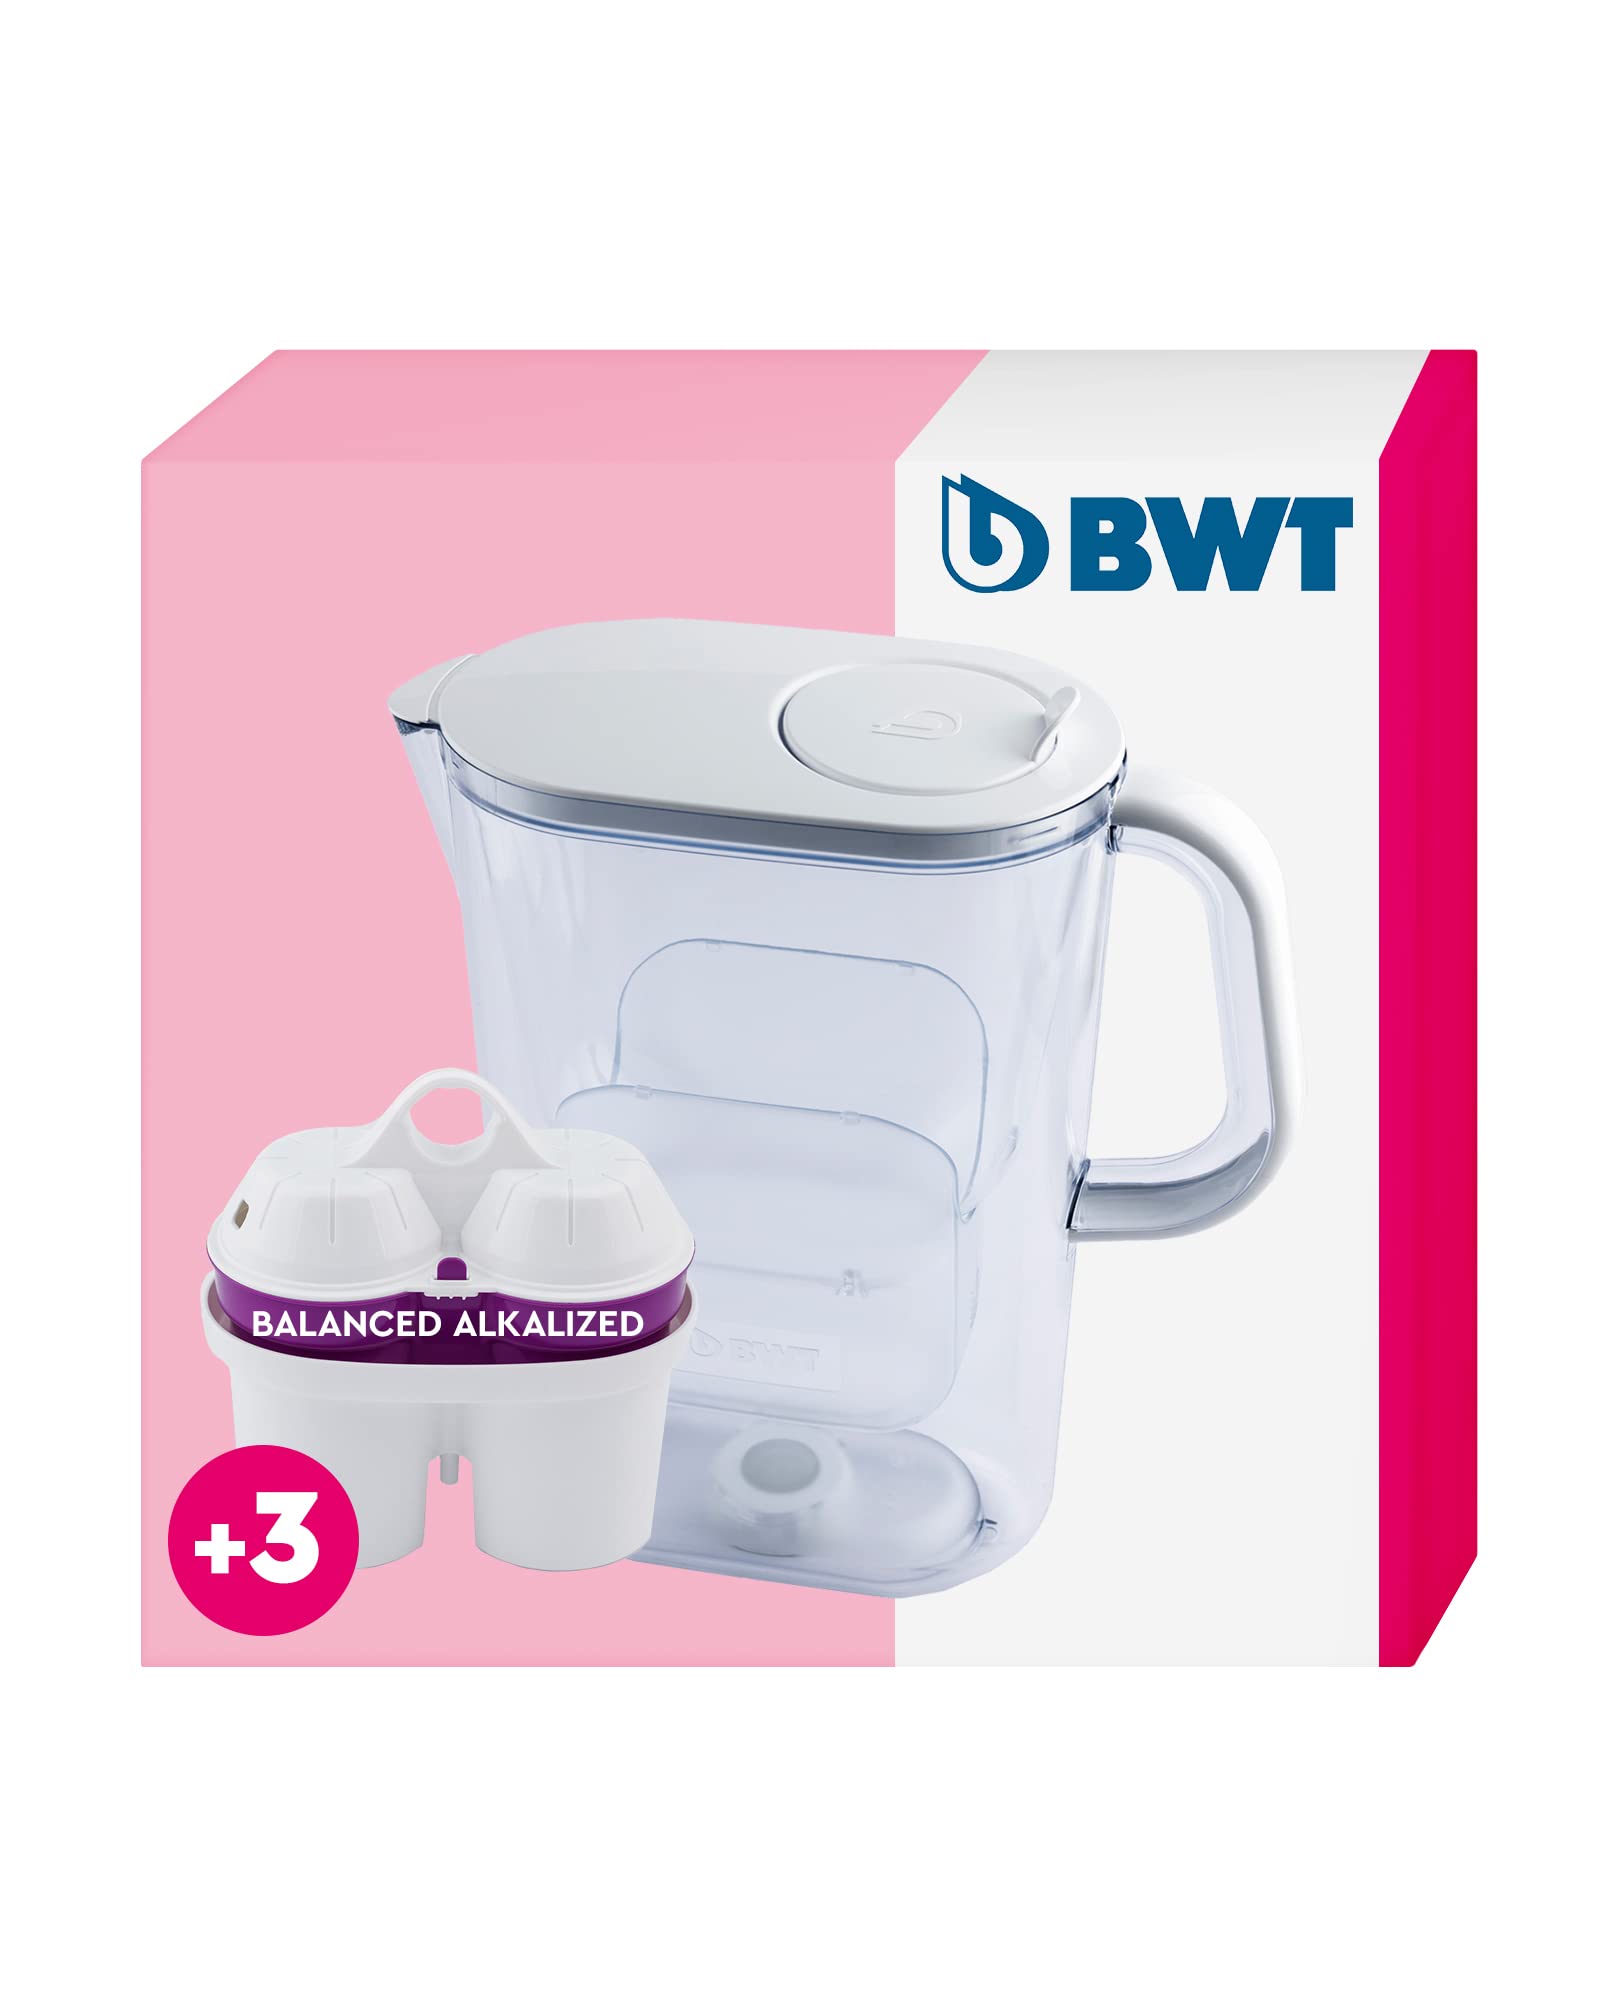 BWT Wasserfilter AQUAlizer 2,6L + 3 Balanced Alkalized Filterkartuschen | Wasserfilter Trinkwasser | Für Speisen & Getränke | Filtert Chlor, Blei & Kupfer